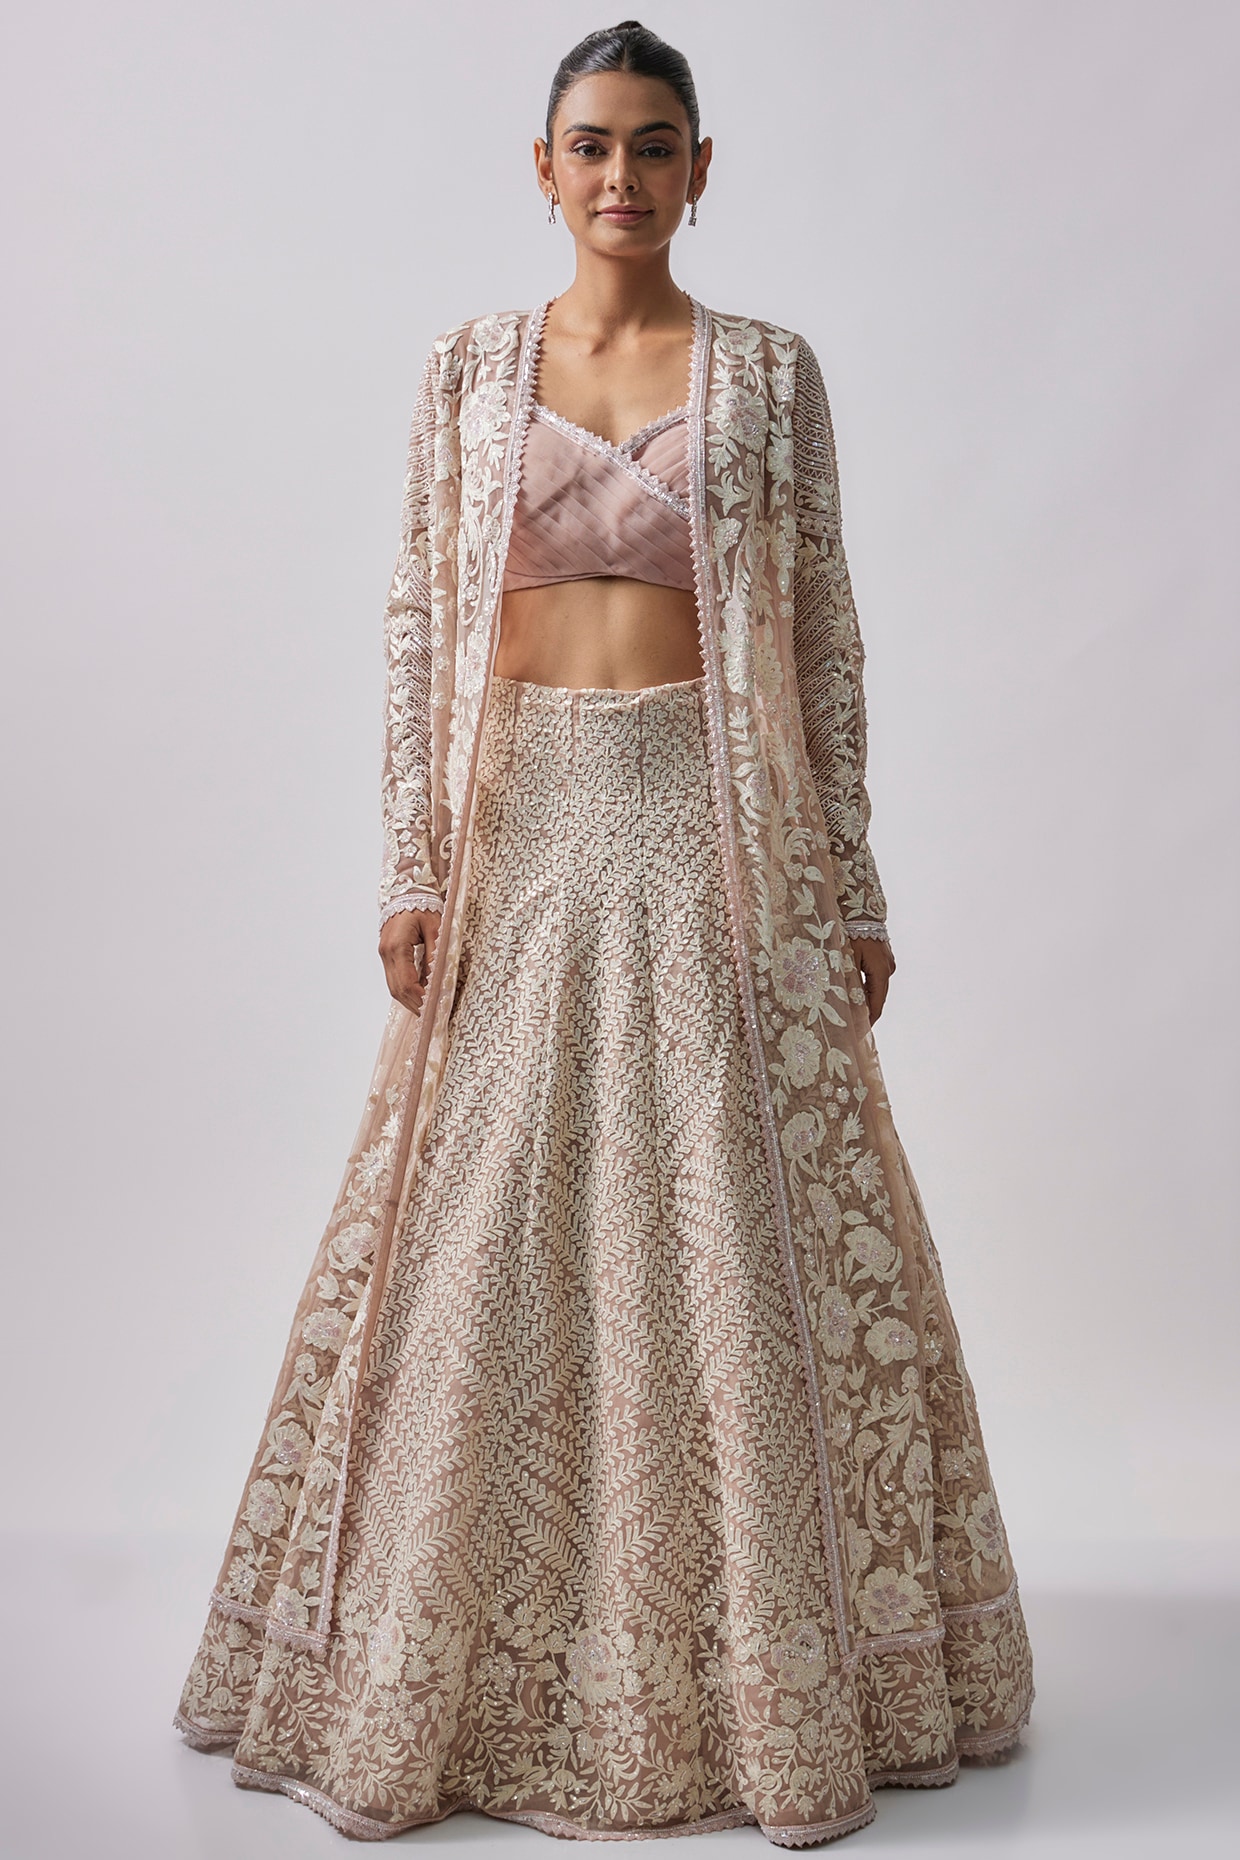 Jacket style lehenga sari - FashionBuzzer.com